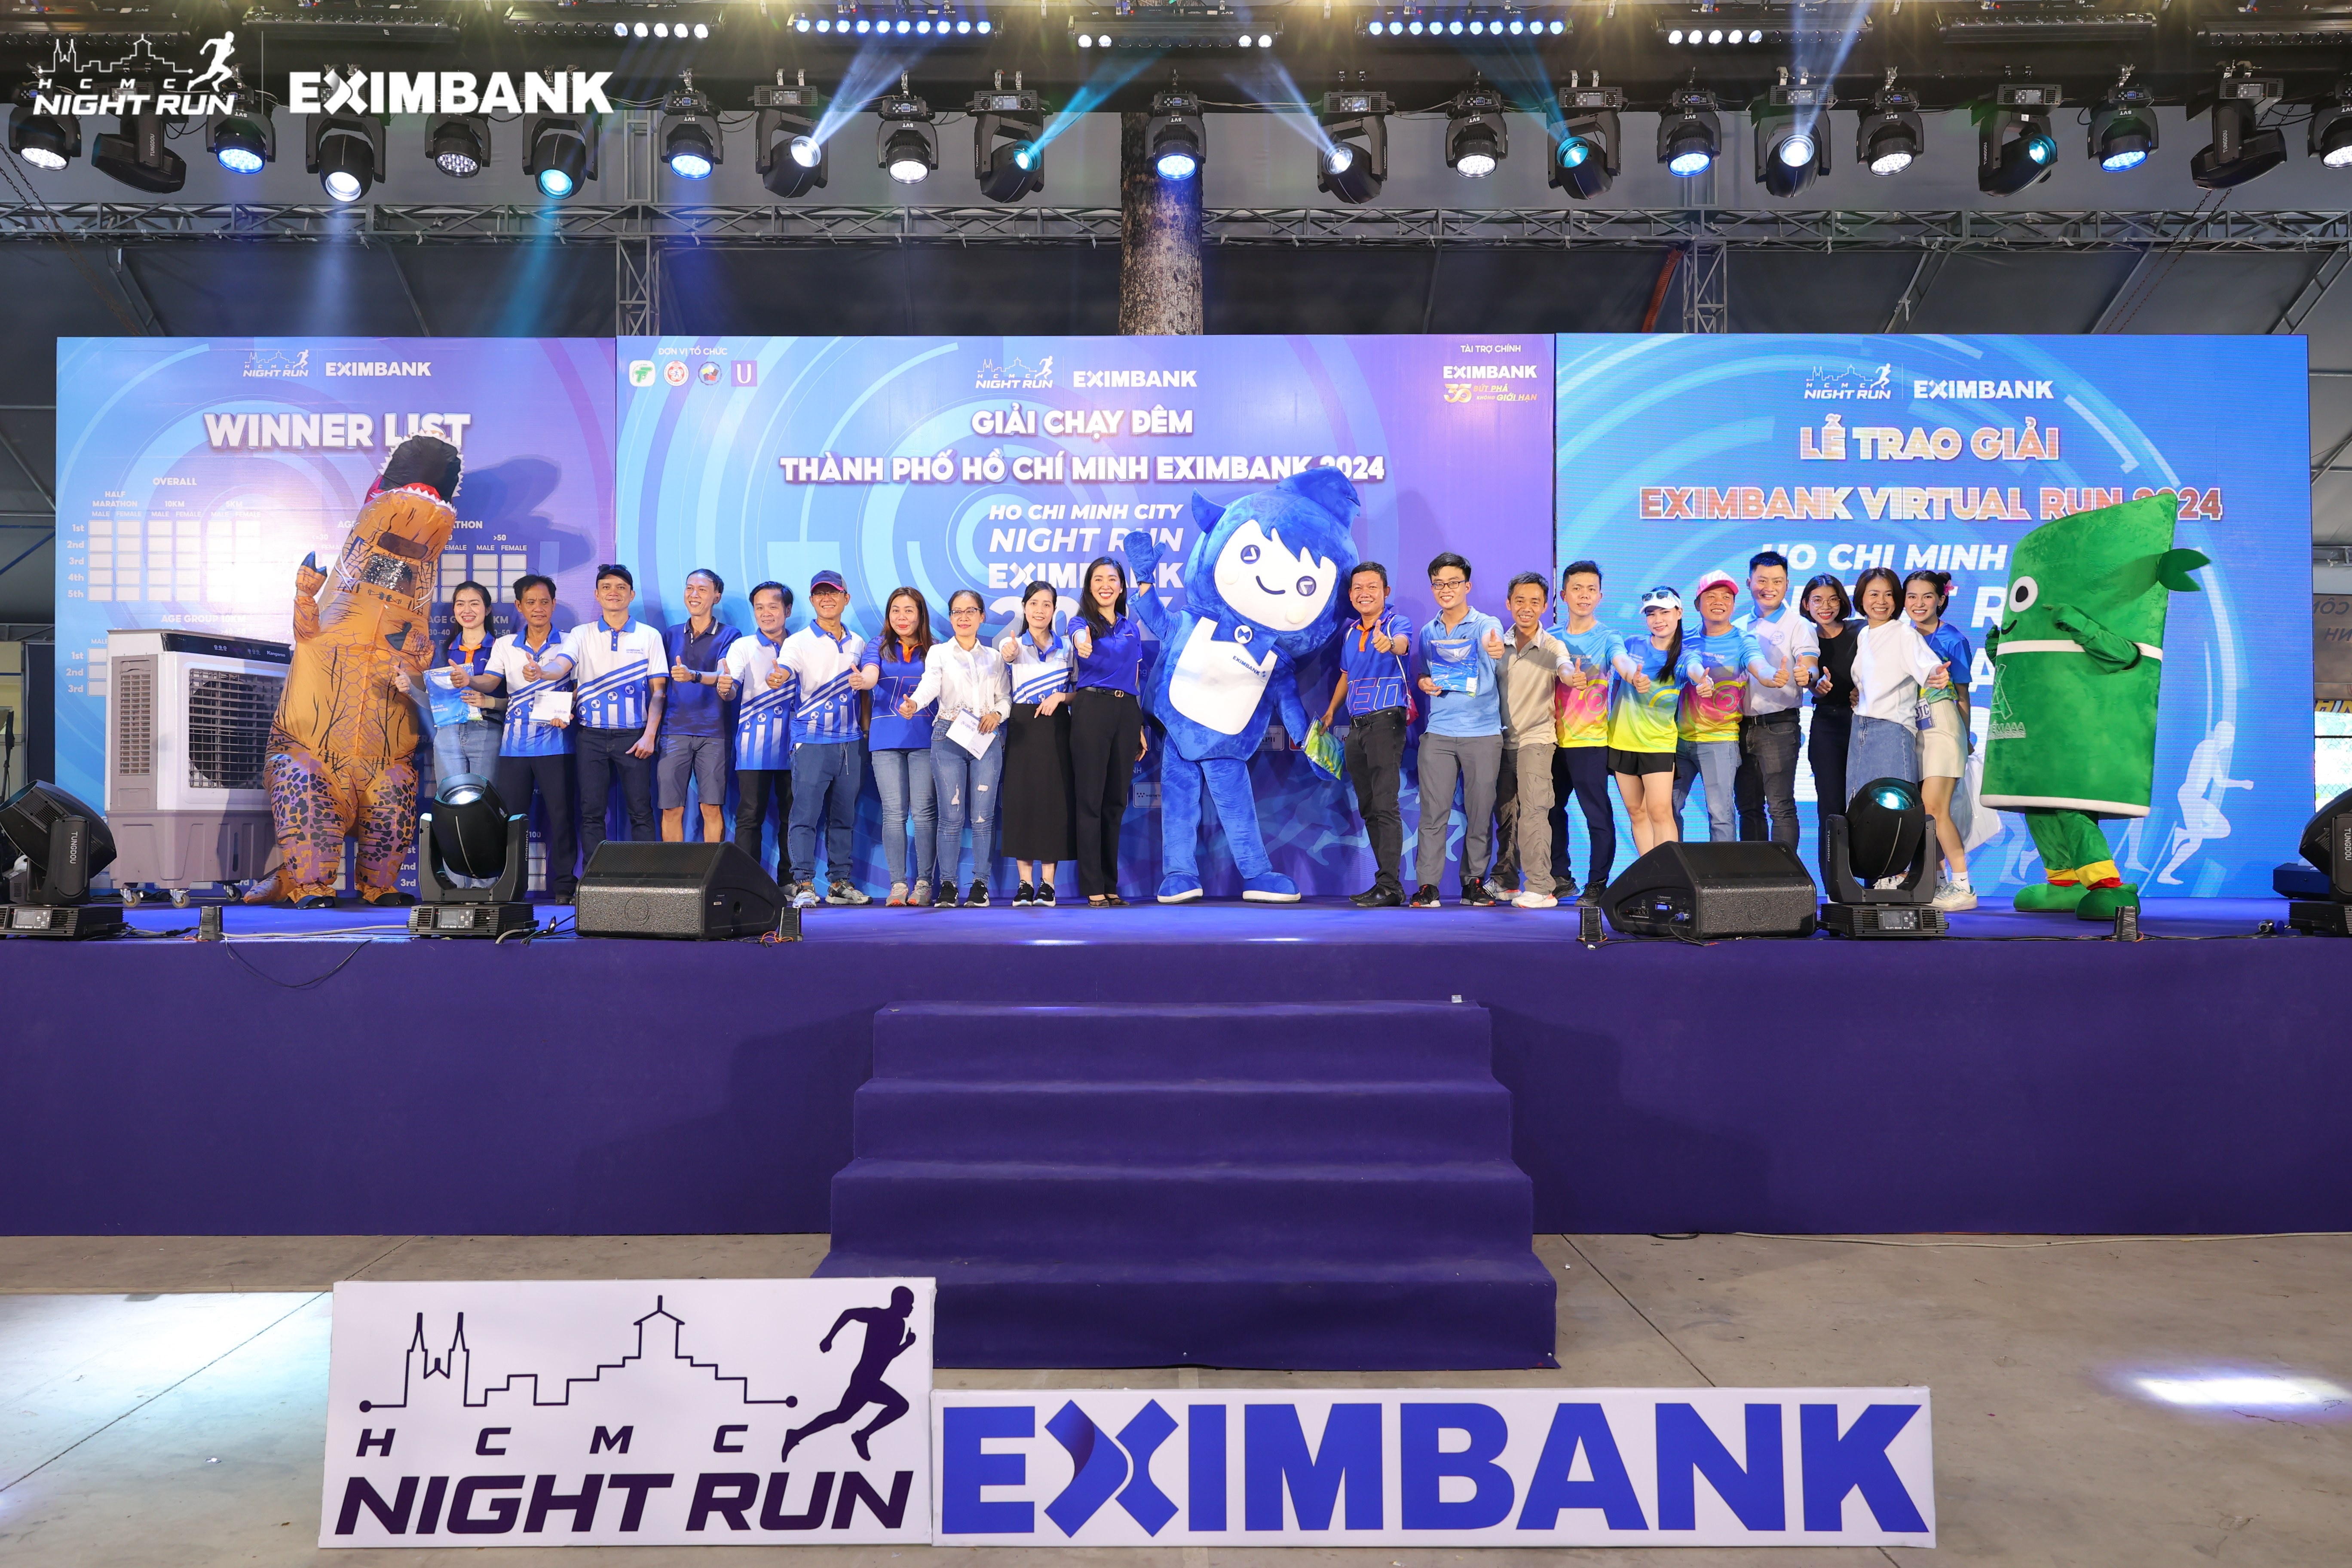 Chung tay lan tỏa tinh thần “Bứt phá không giới hạn” đến các VĐV, các Eximer đã “rinh” về nhiều phần thưởng hấp dẫn tại cuộc thi trực tuyến Eximbank Virtual Run 2024 - Run As One.